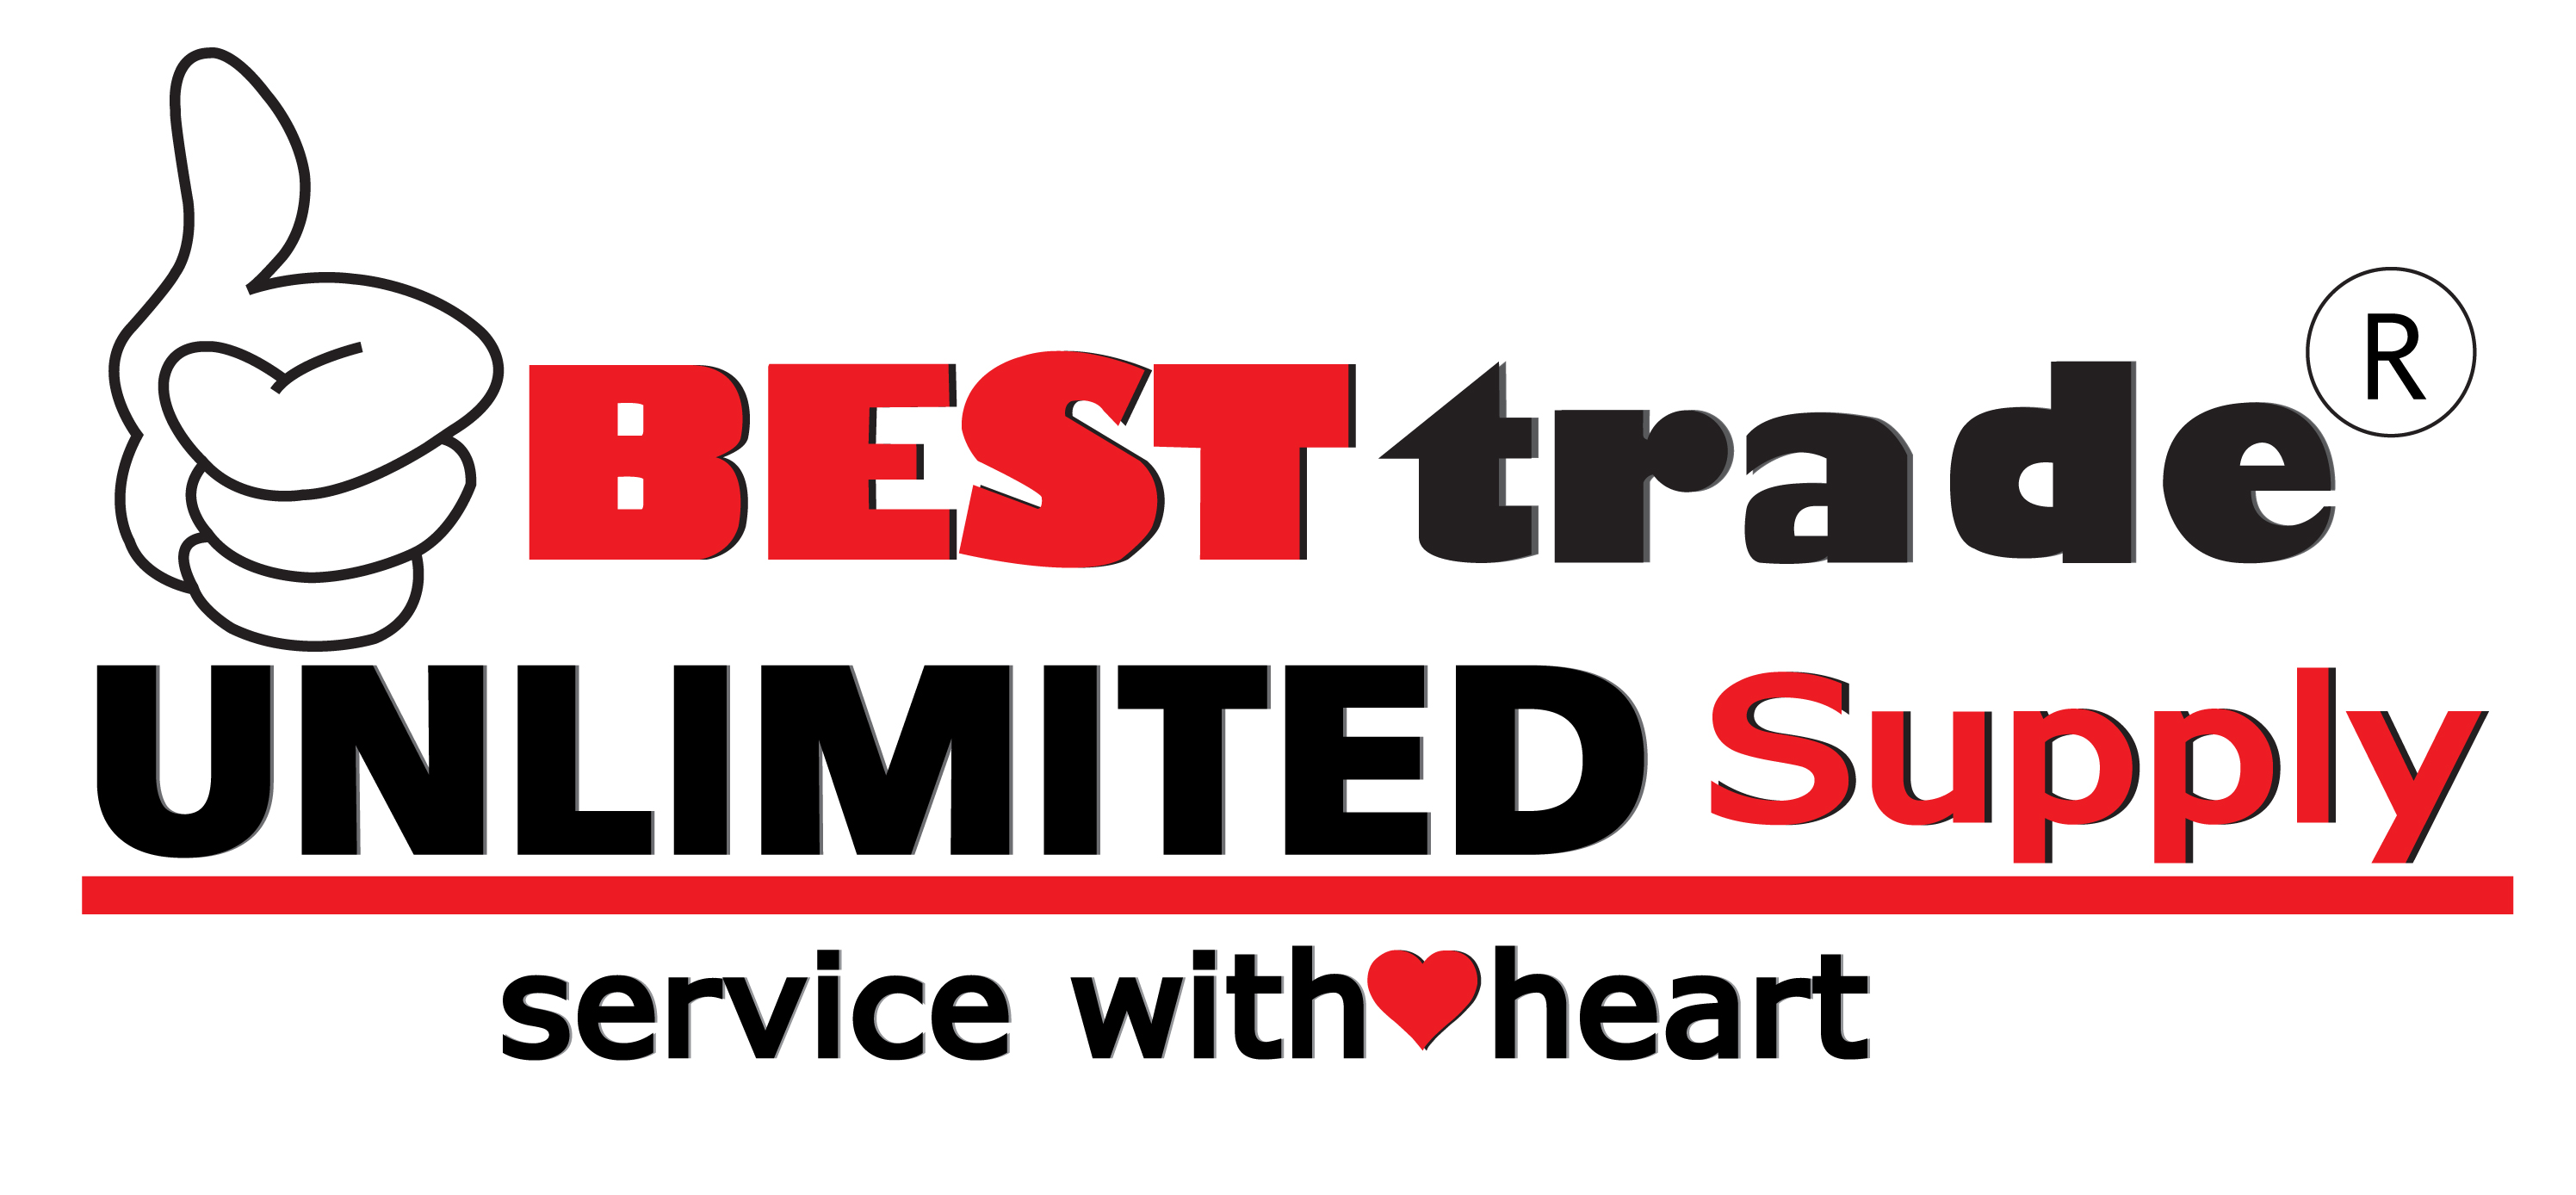 Best Trade & Unlimited Supply Ltd.,Part., ห้างหุ้นส่วนจำกัด เบสท์ เทรด แอนด์ อันลิมิเต็ด ซัพพลาย